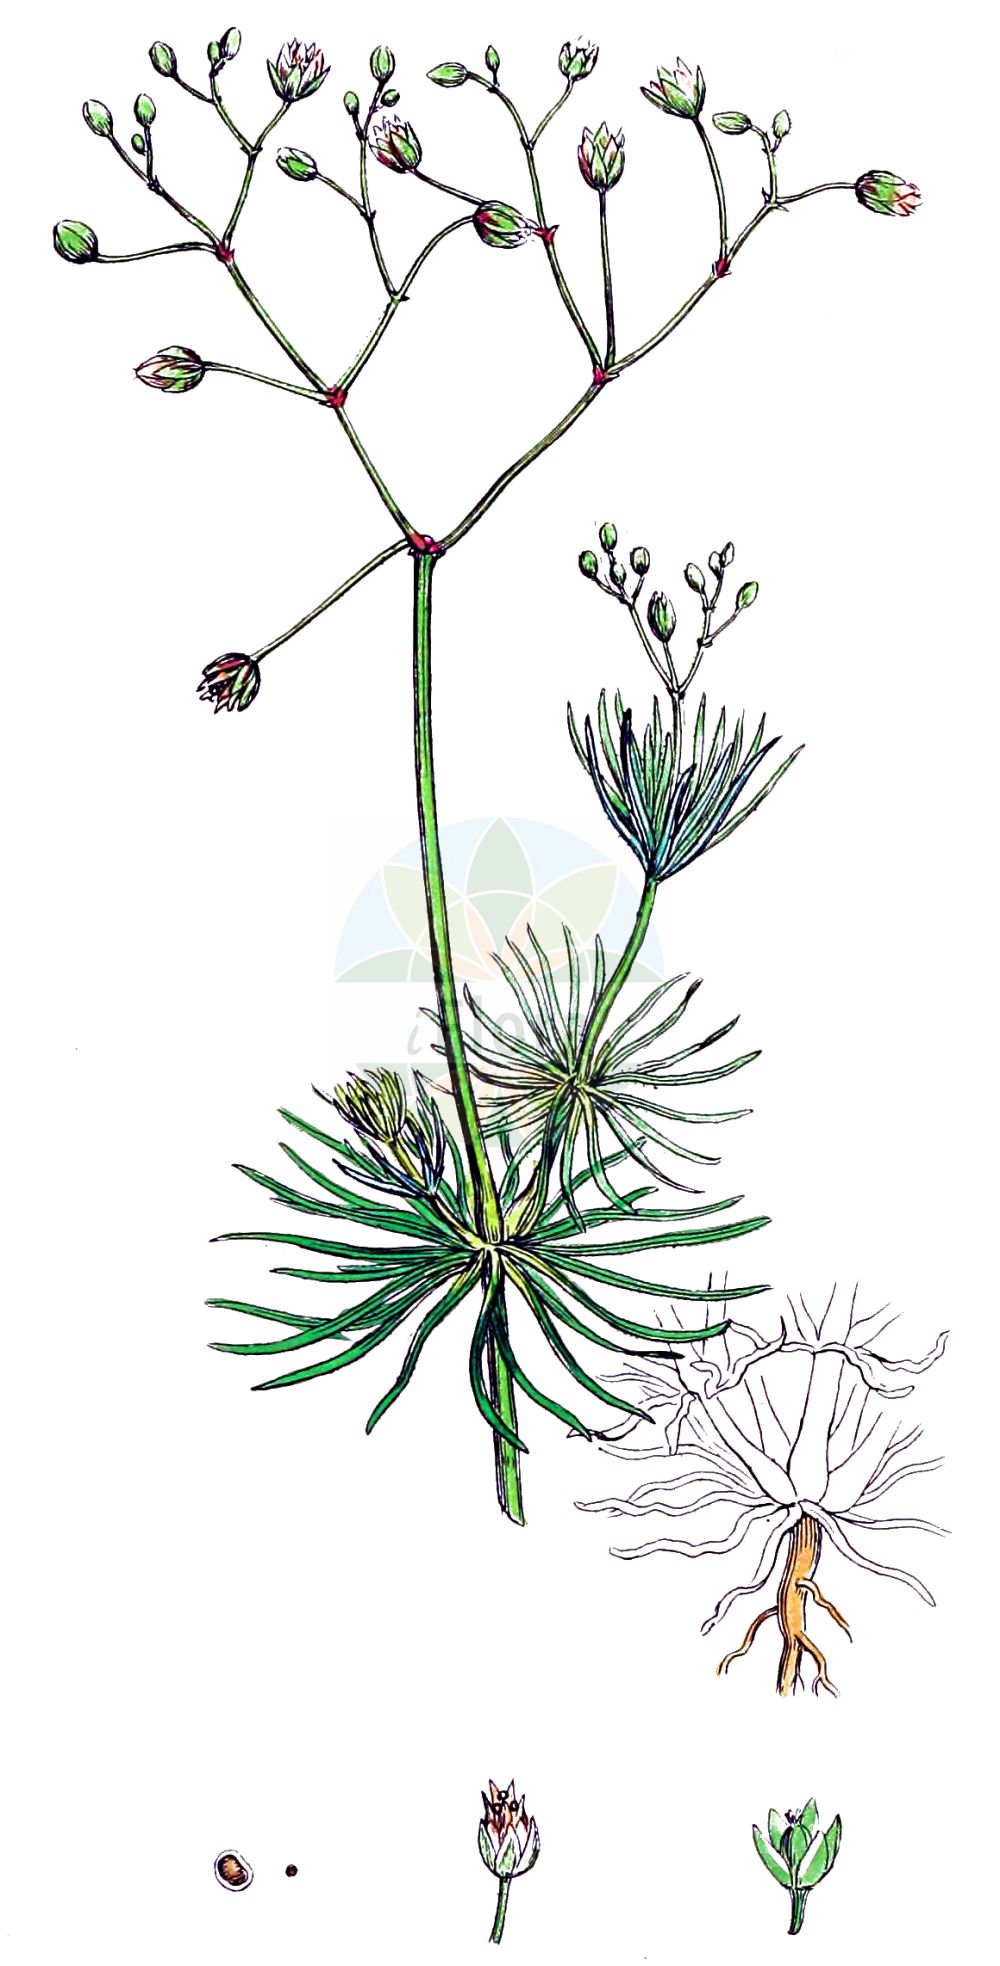 Historische Abbildung von Spergula arvensis (Acker-Spark - Corn Spurrey). Das Bild zeigt Blatt, Bluete, Frucht und Same. ---- Historical Drawing of Spergula arvensis (Acker-Spark - Corn Spurrey). The image is showing leaf, flower, fruit and seed.(Spergula arvensis,Acker-Spark,Corn Spurrey,Spergula arvensis,Spergula chieusseana,Spergula laricina,Spergula linicola,Spergula maxima,Spergula sativa,Spergula vulgaris,Acker-Spark,Lein-Spergel,Corn Spurrey,Corn Spurry,Sandweed,Spergula,Spark,Spurry,Caryophyllaceae,Nelkengewächse,Pink family,Blatt,Bluete,Frucht,Same,leaf,flower,fruit,seed,Sowerby (1790-1813))